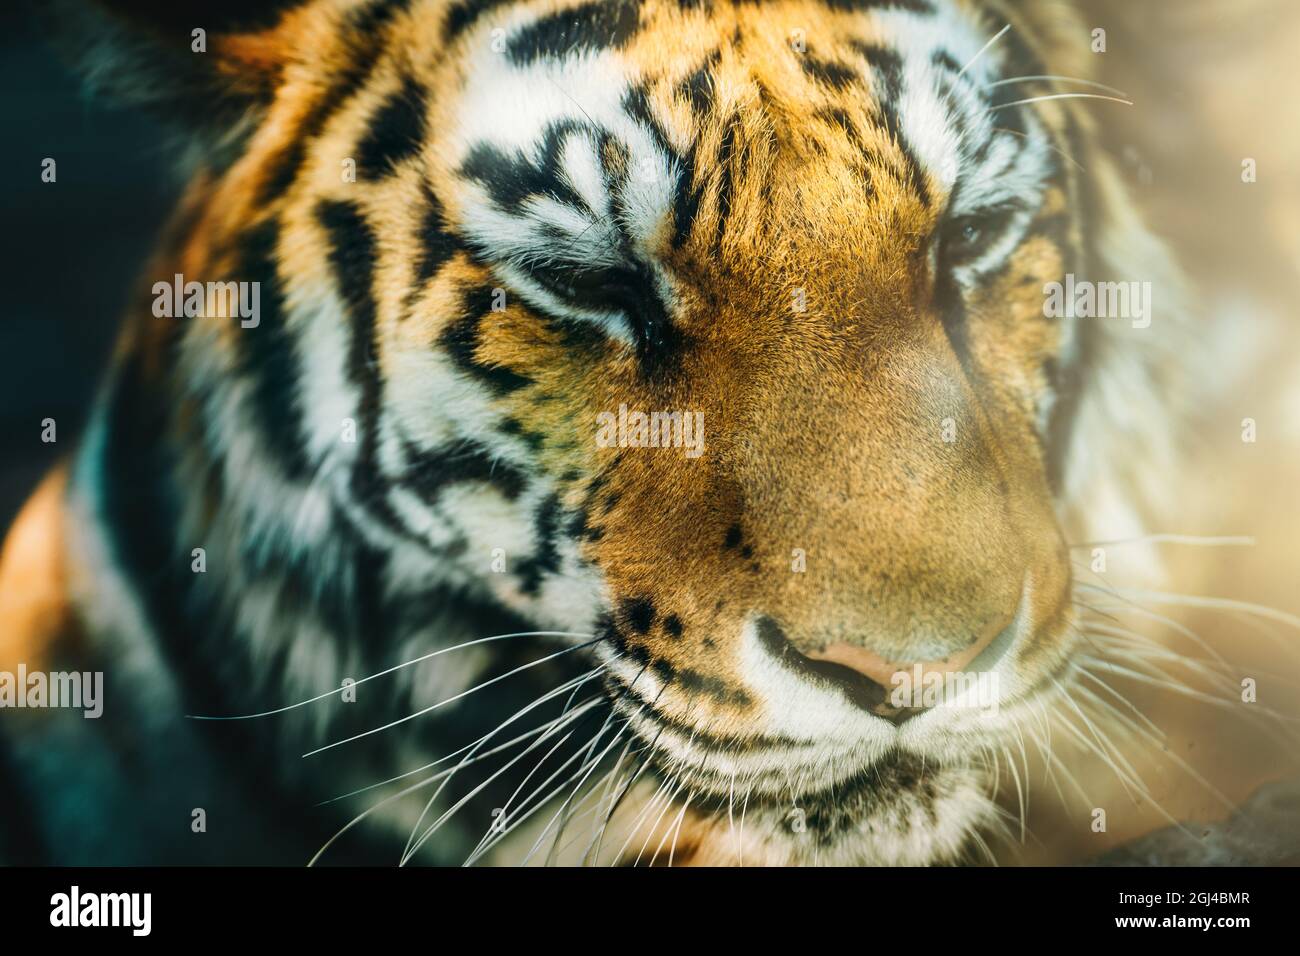 Tiger Kopf oder Gesicht in Sonnenlicht. Schöne Wildkatze. Stockfoto